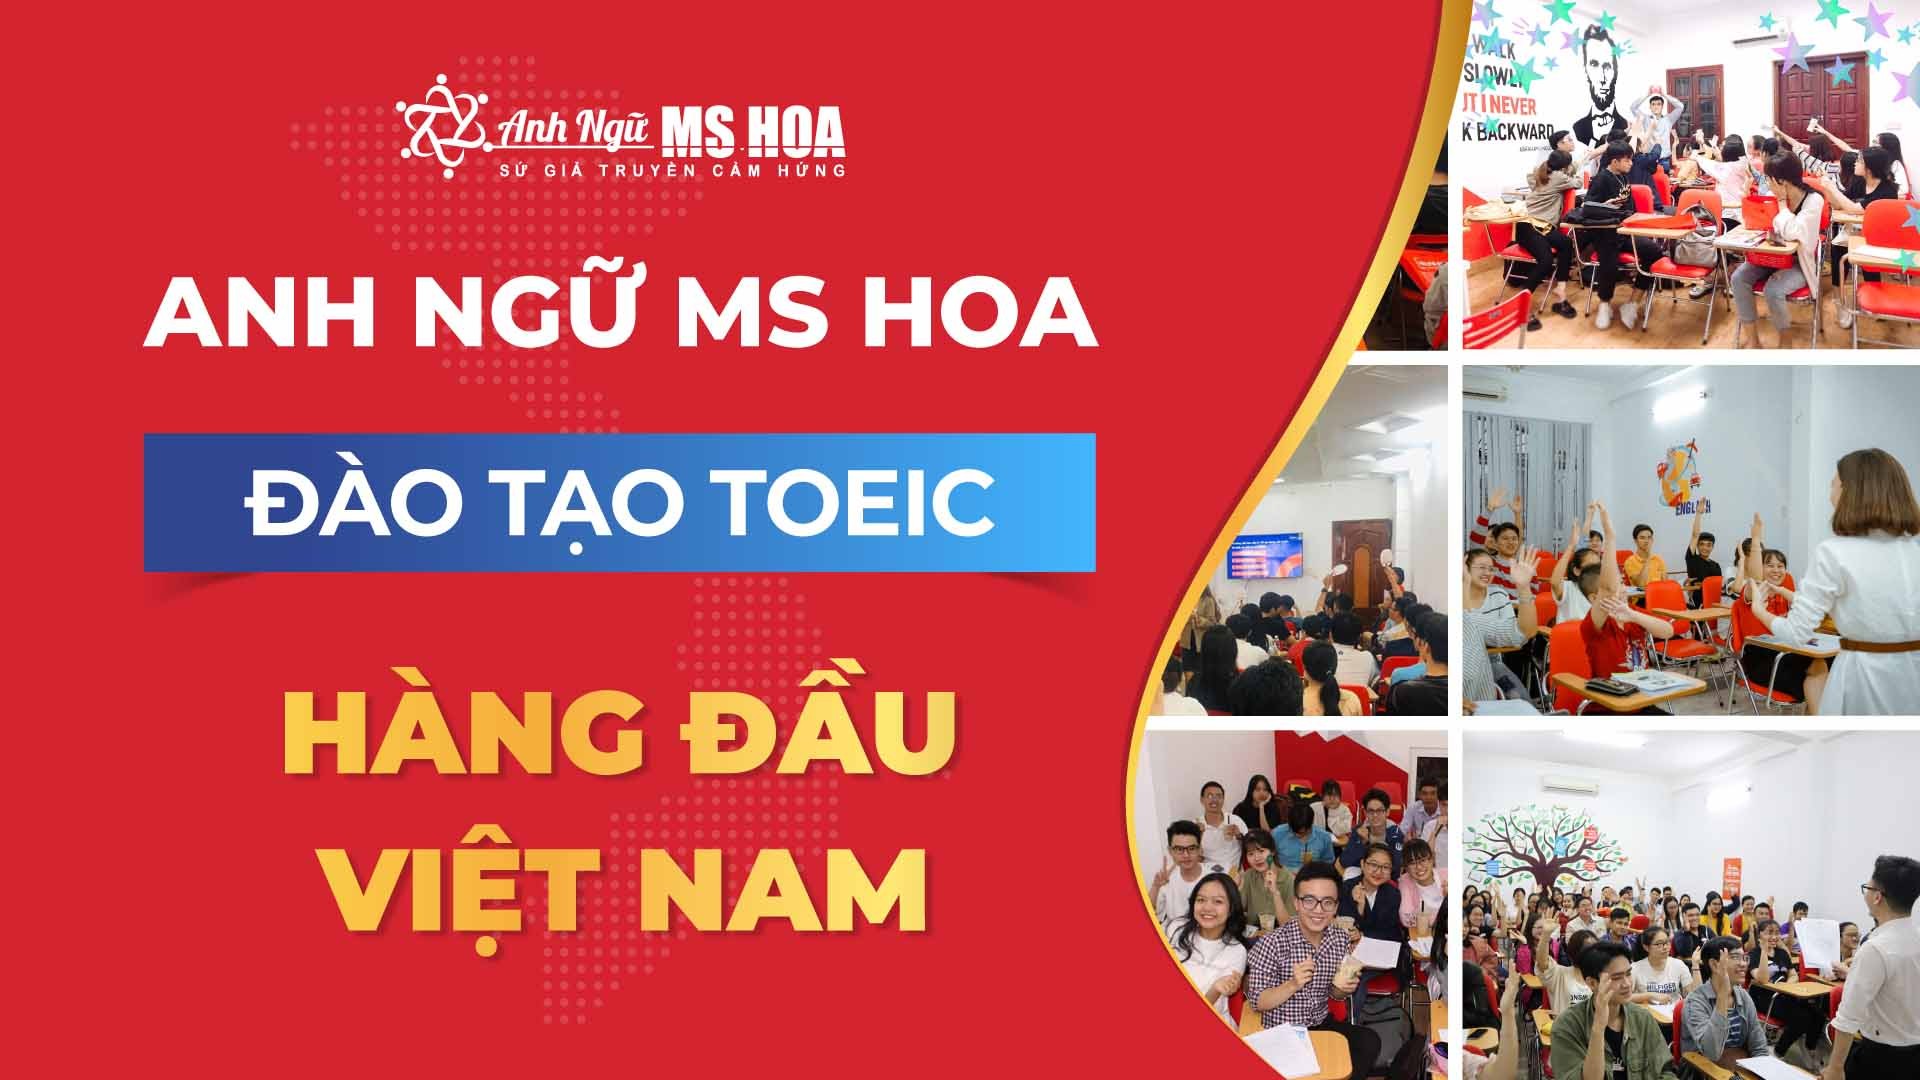 Anh ngữ Ms Hoa - Đào tạo TOEIC uy tín tại Việt Nam